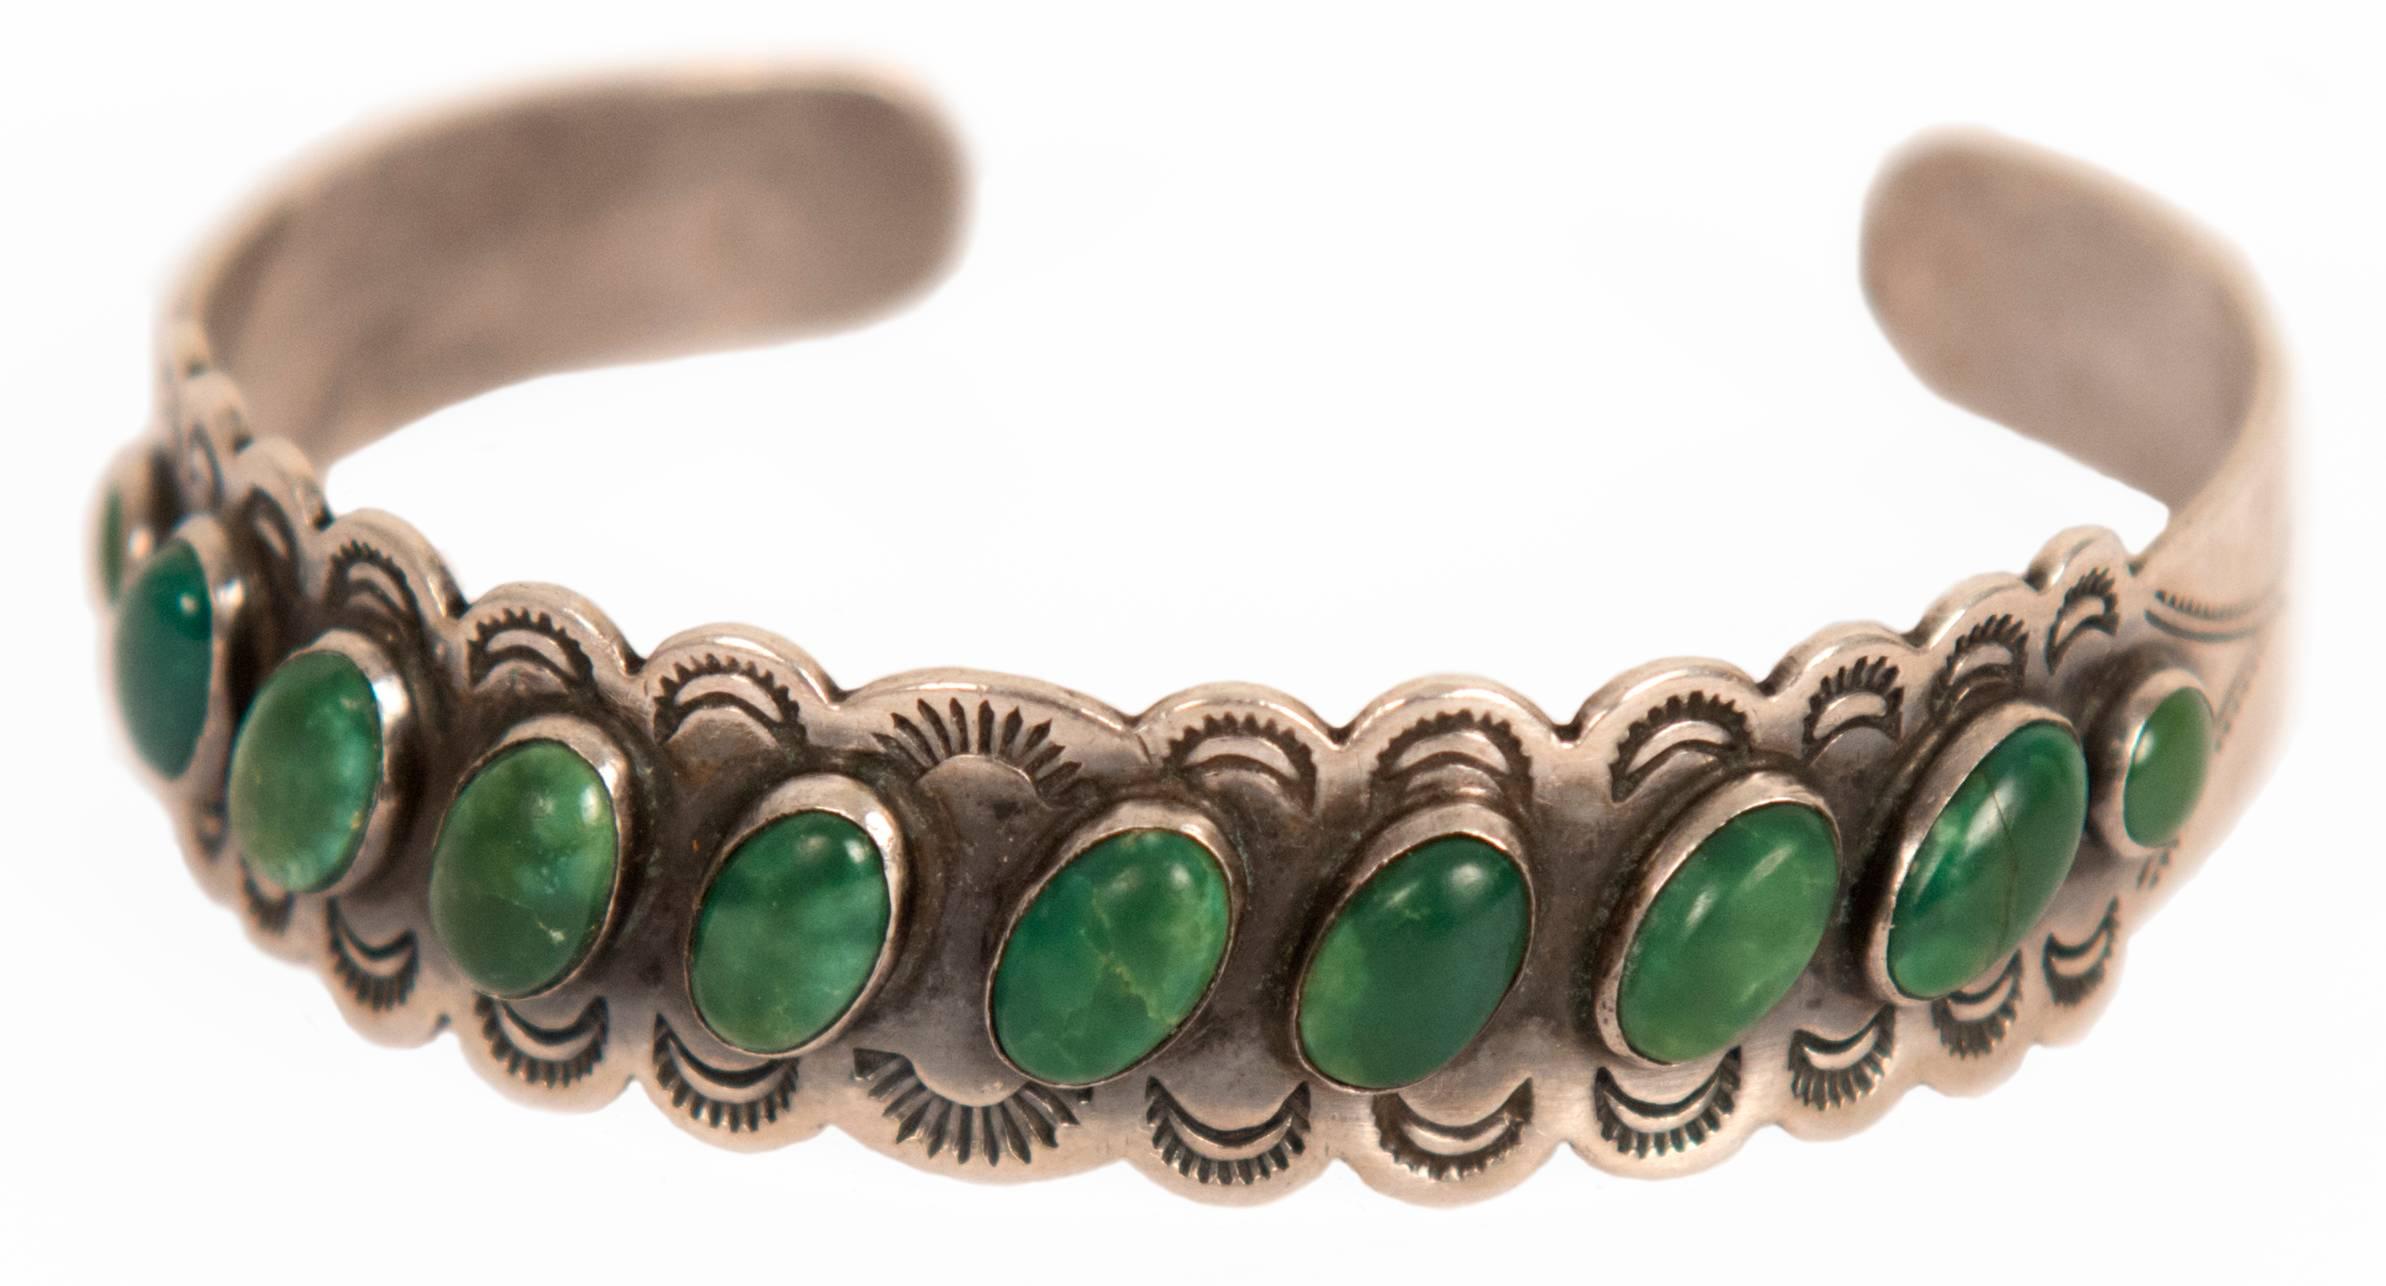 Nice silver Navajo bracelet, circa 1940.
Excellent condition.